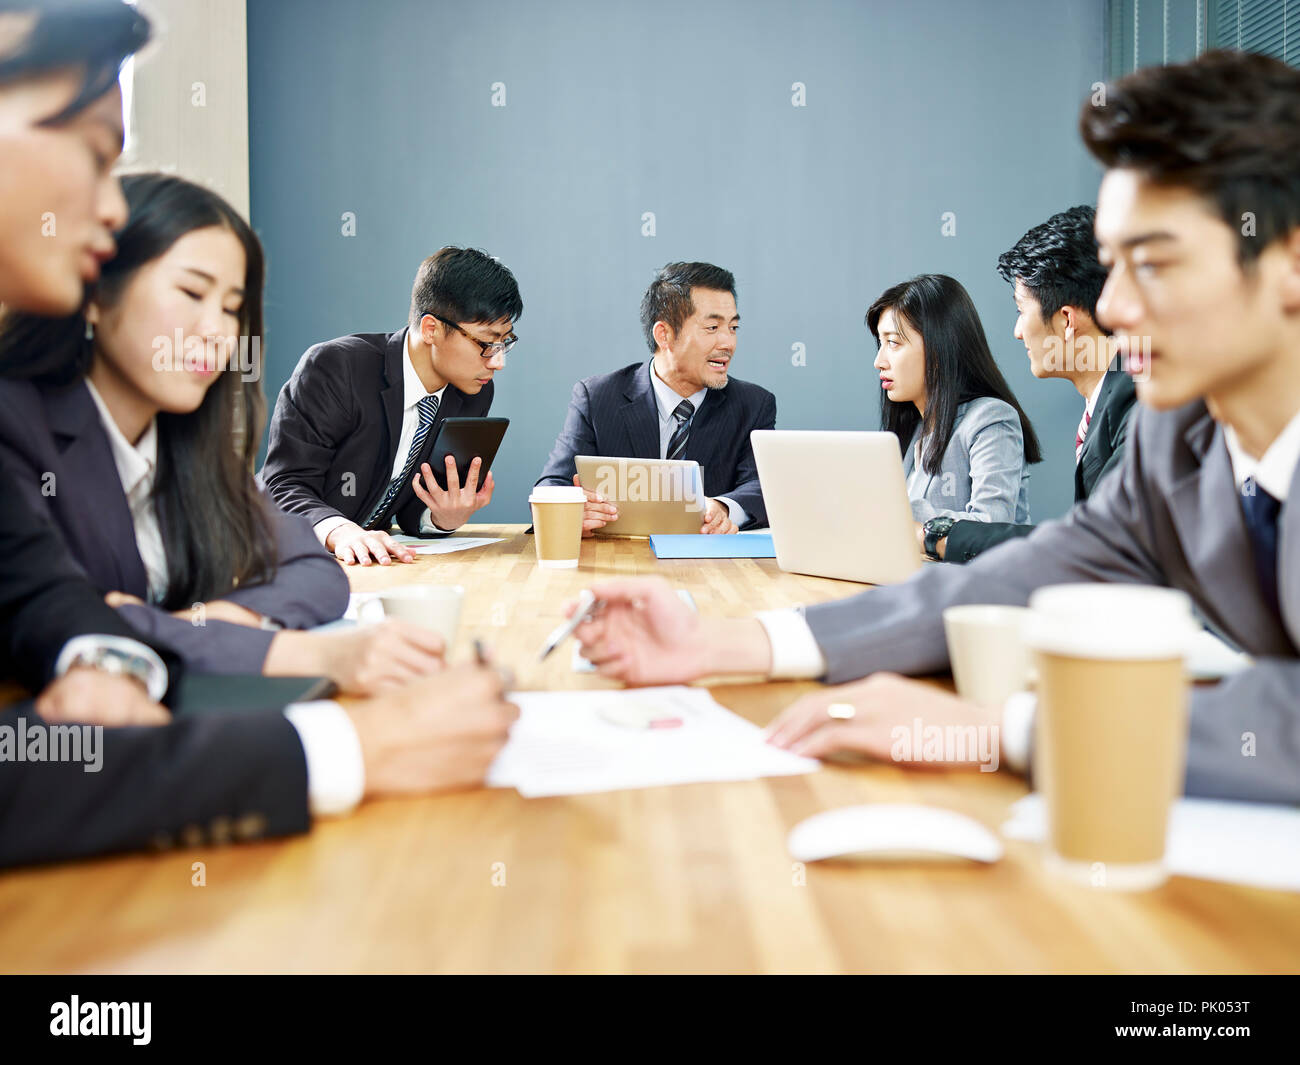 Asiatische corporate Menschen diskutieren in Gruppen. Stockfoto